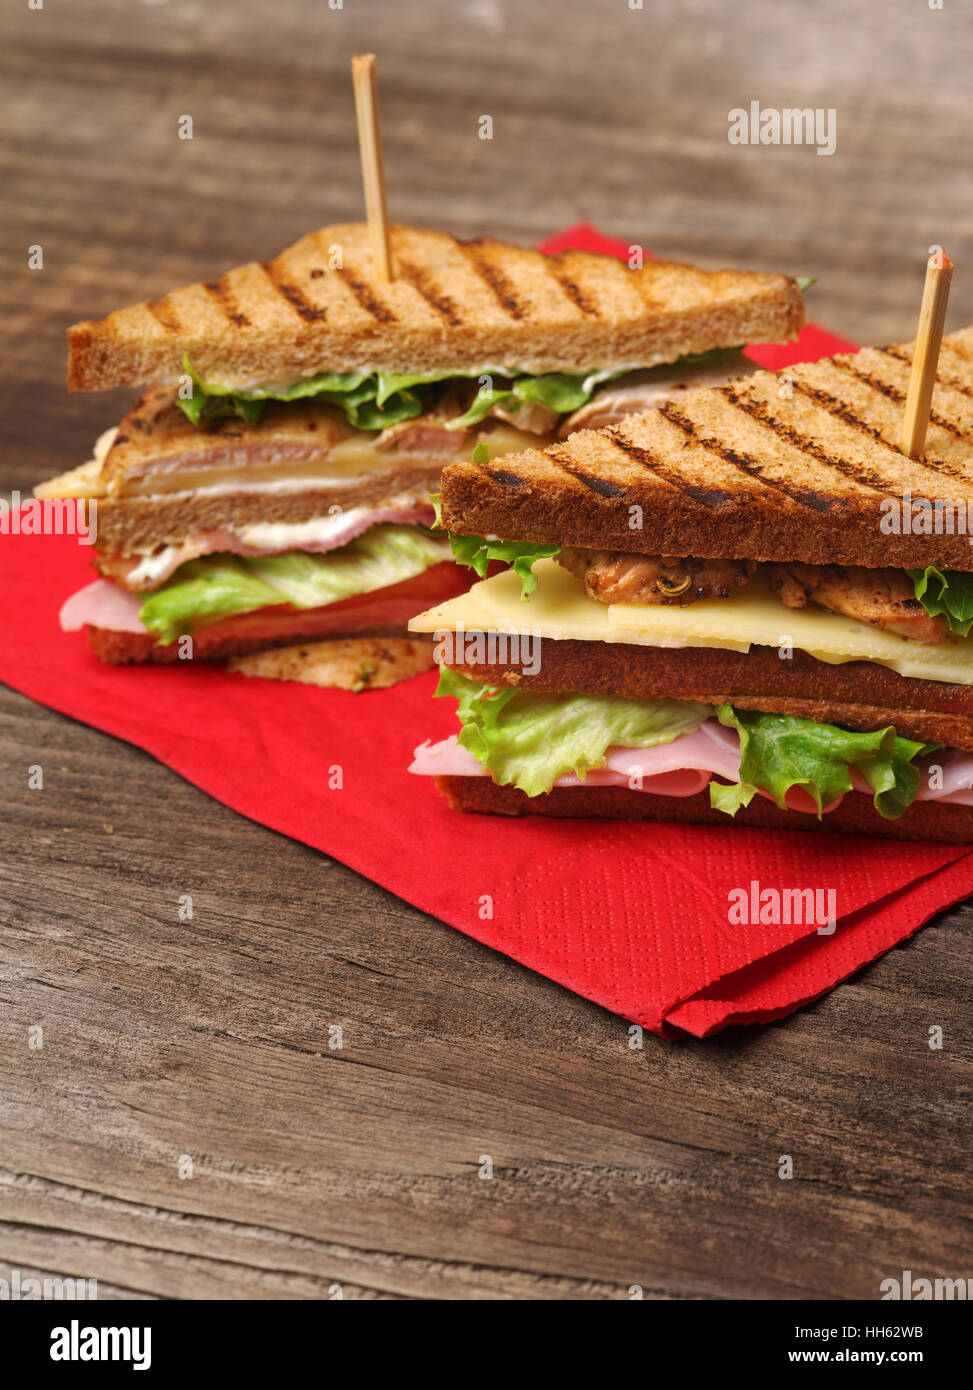 Foto di un club sandwich realizzati con la Turchia, pancetta, prosciutto, pomodoro, formaggio, lattuga su un tovagliolo rosso e il legno vecchio tavolo da picnic. Foto Stock